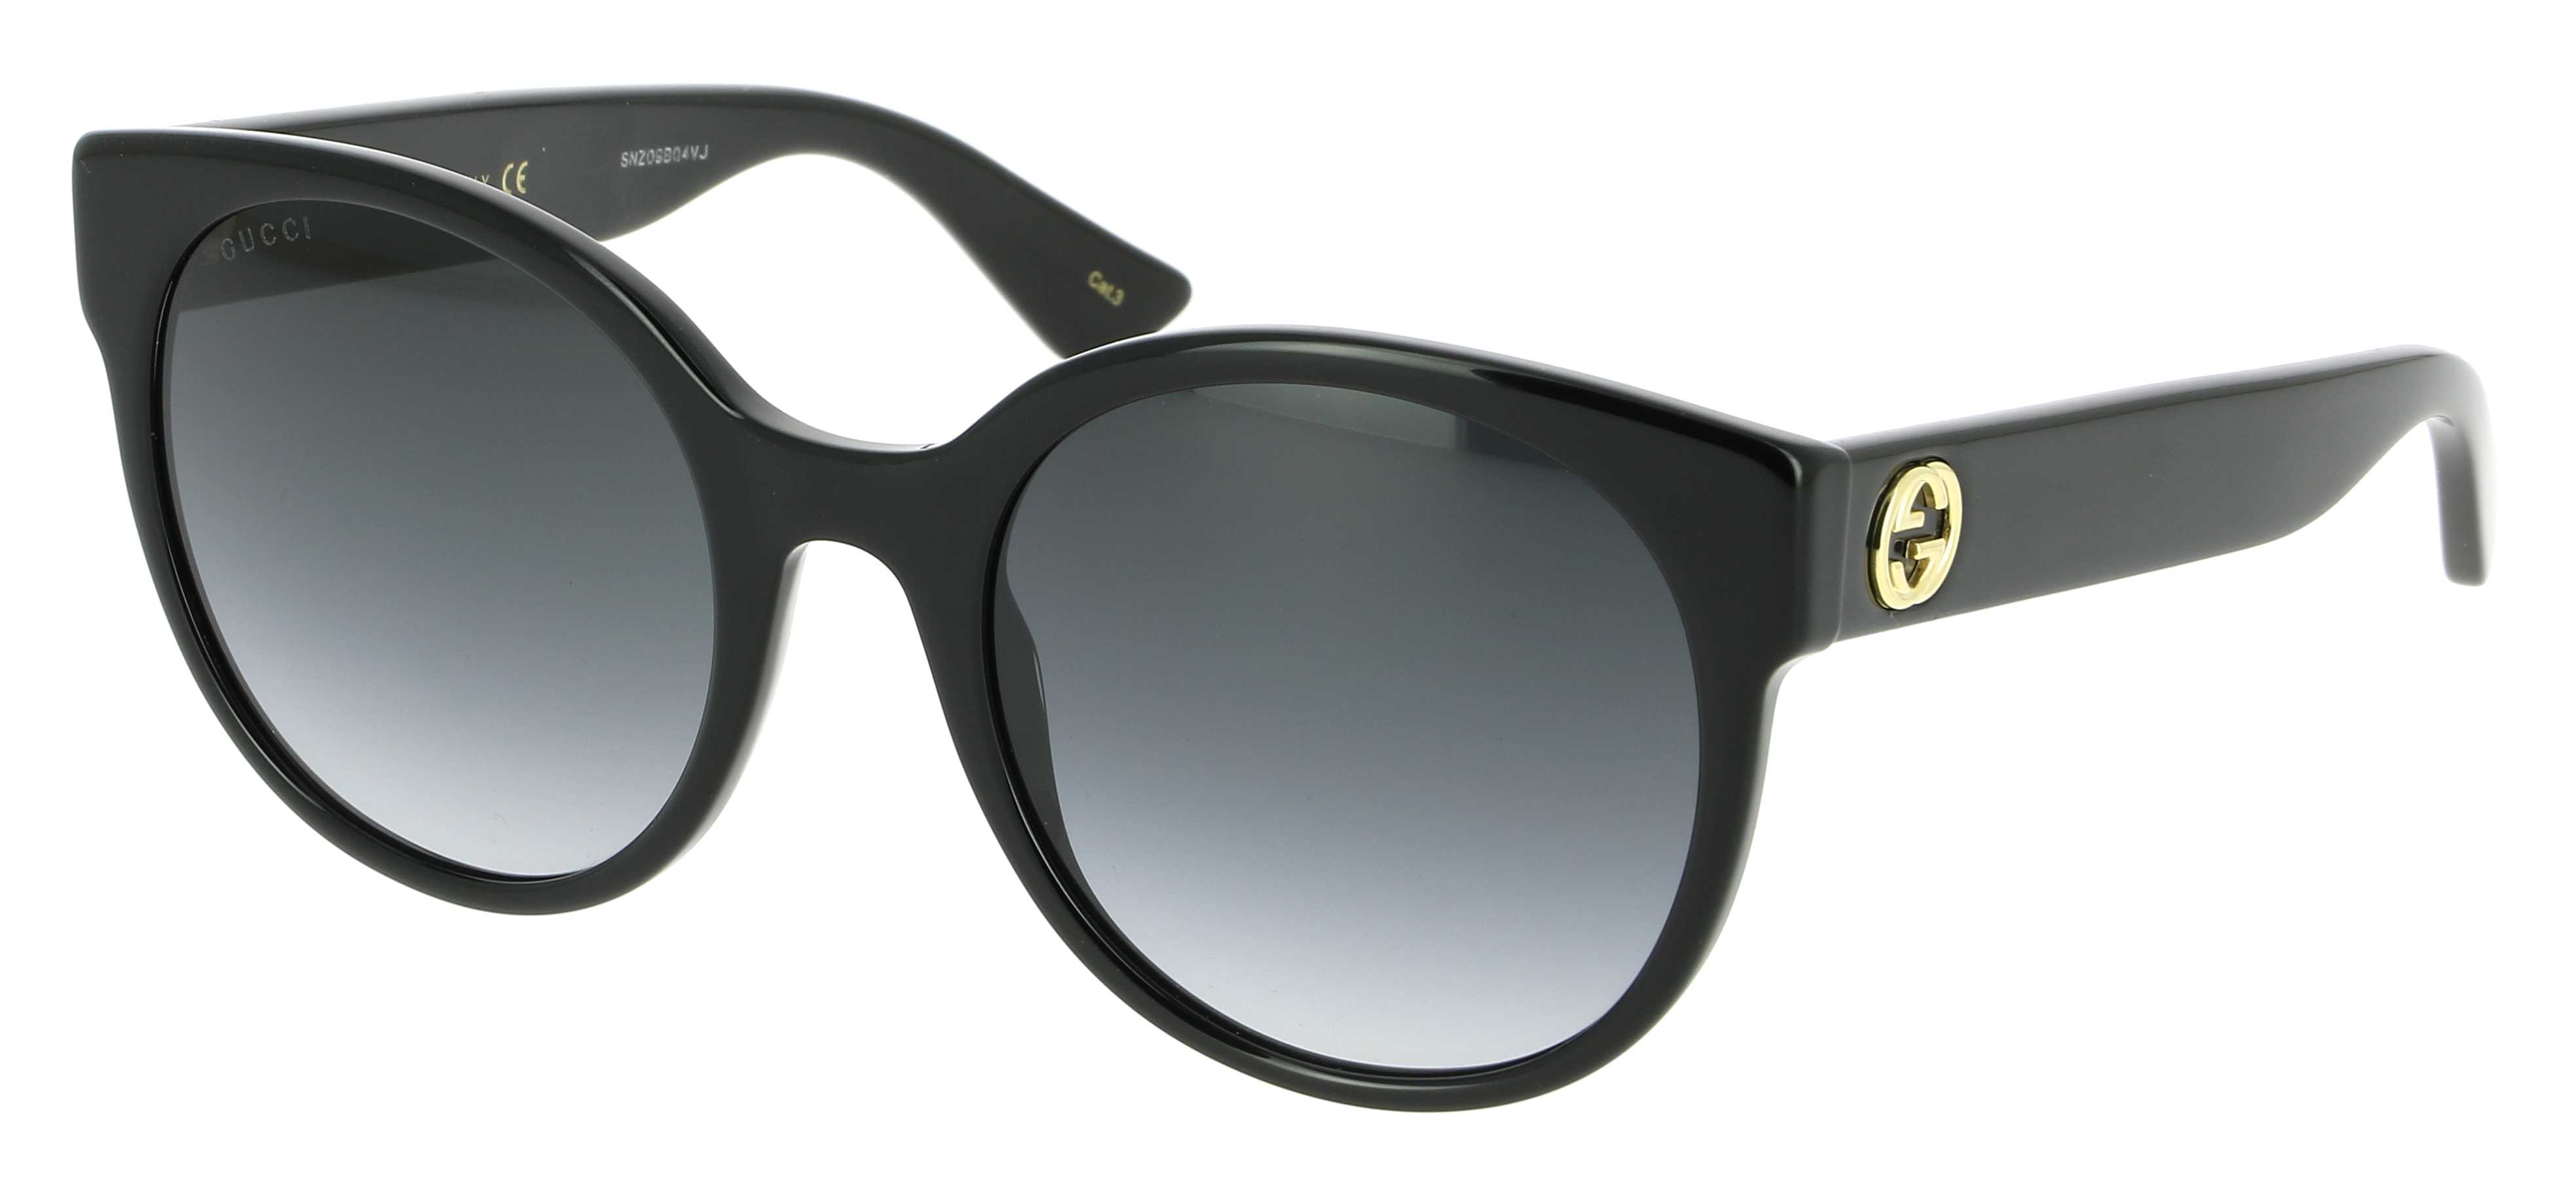 gucci sunglasses 2019 price